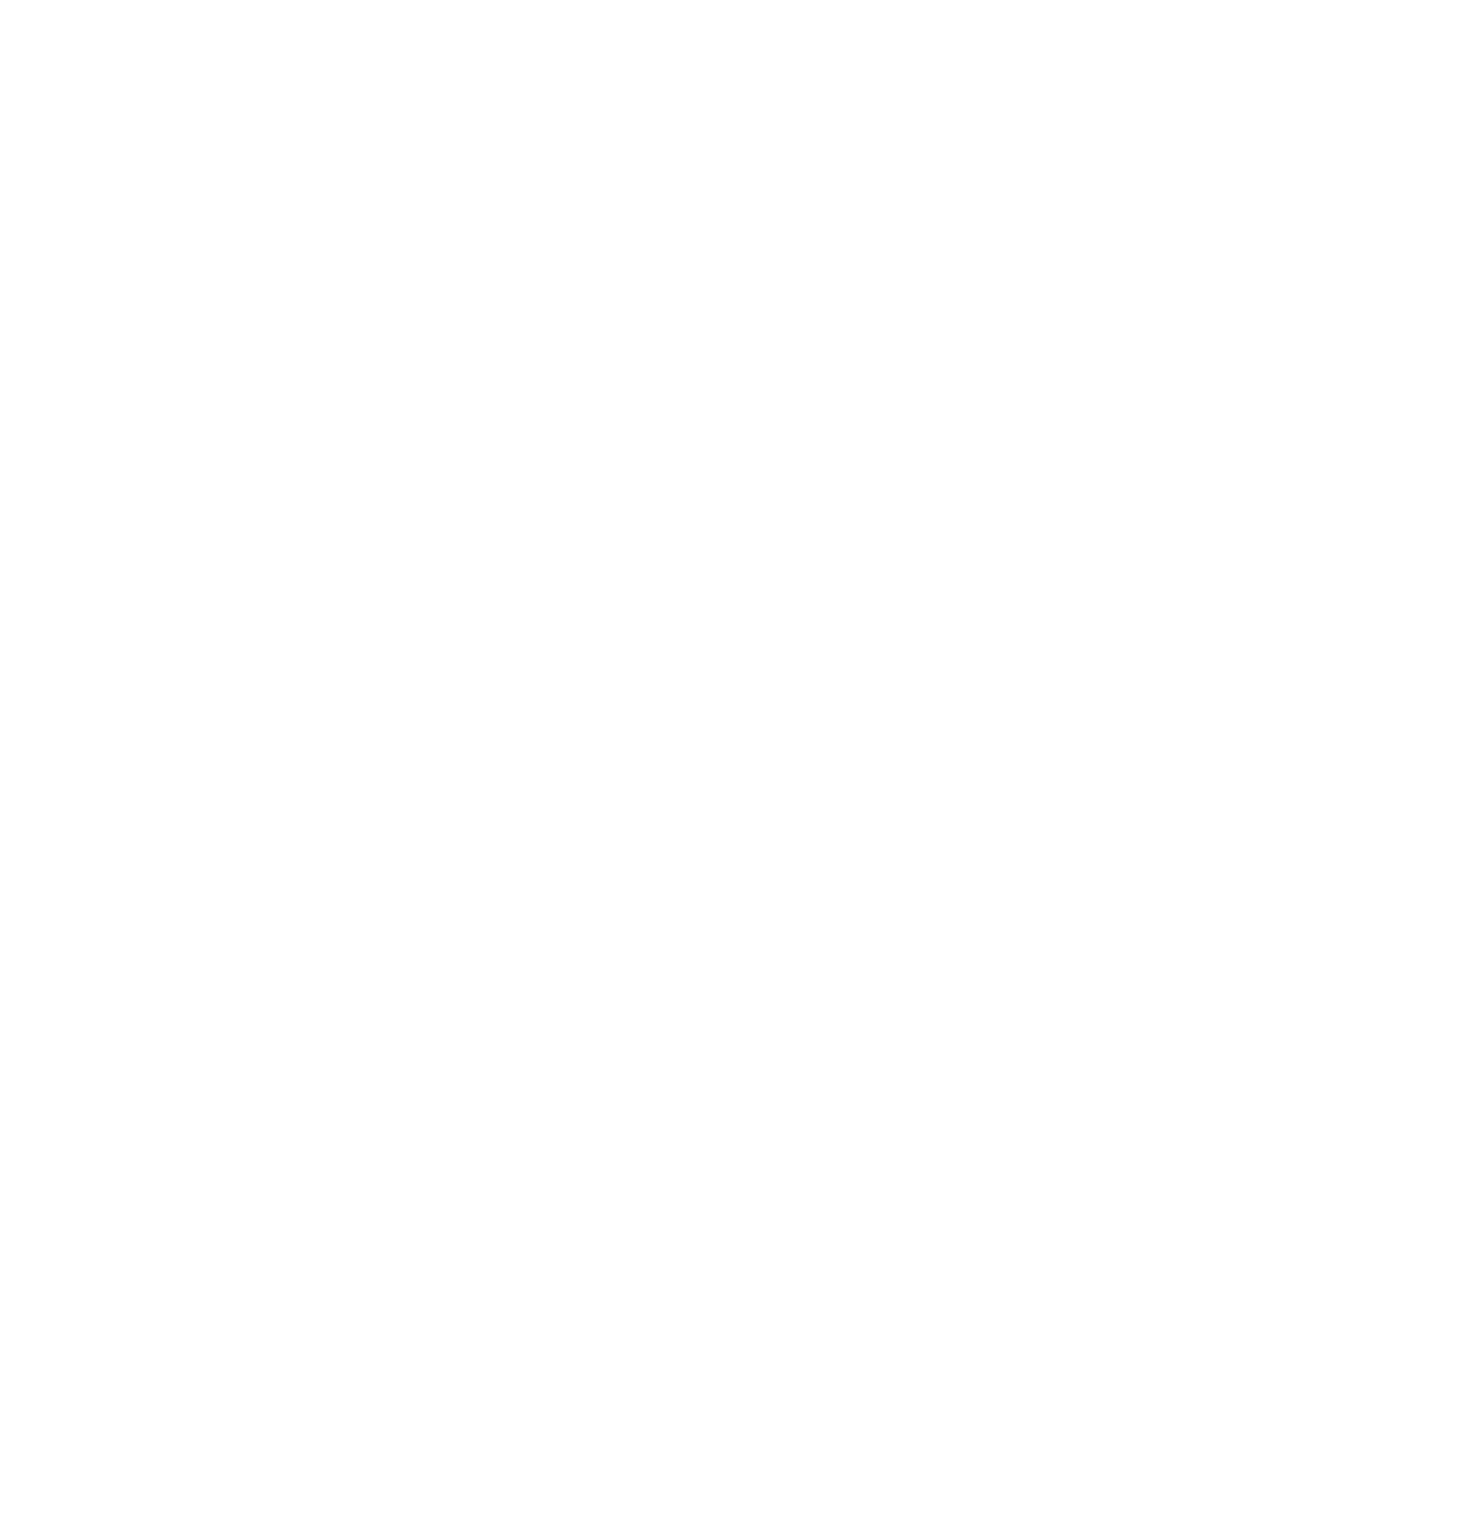 Doximity logo pour fonds sombres (PNG transparent)